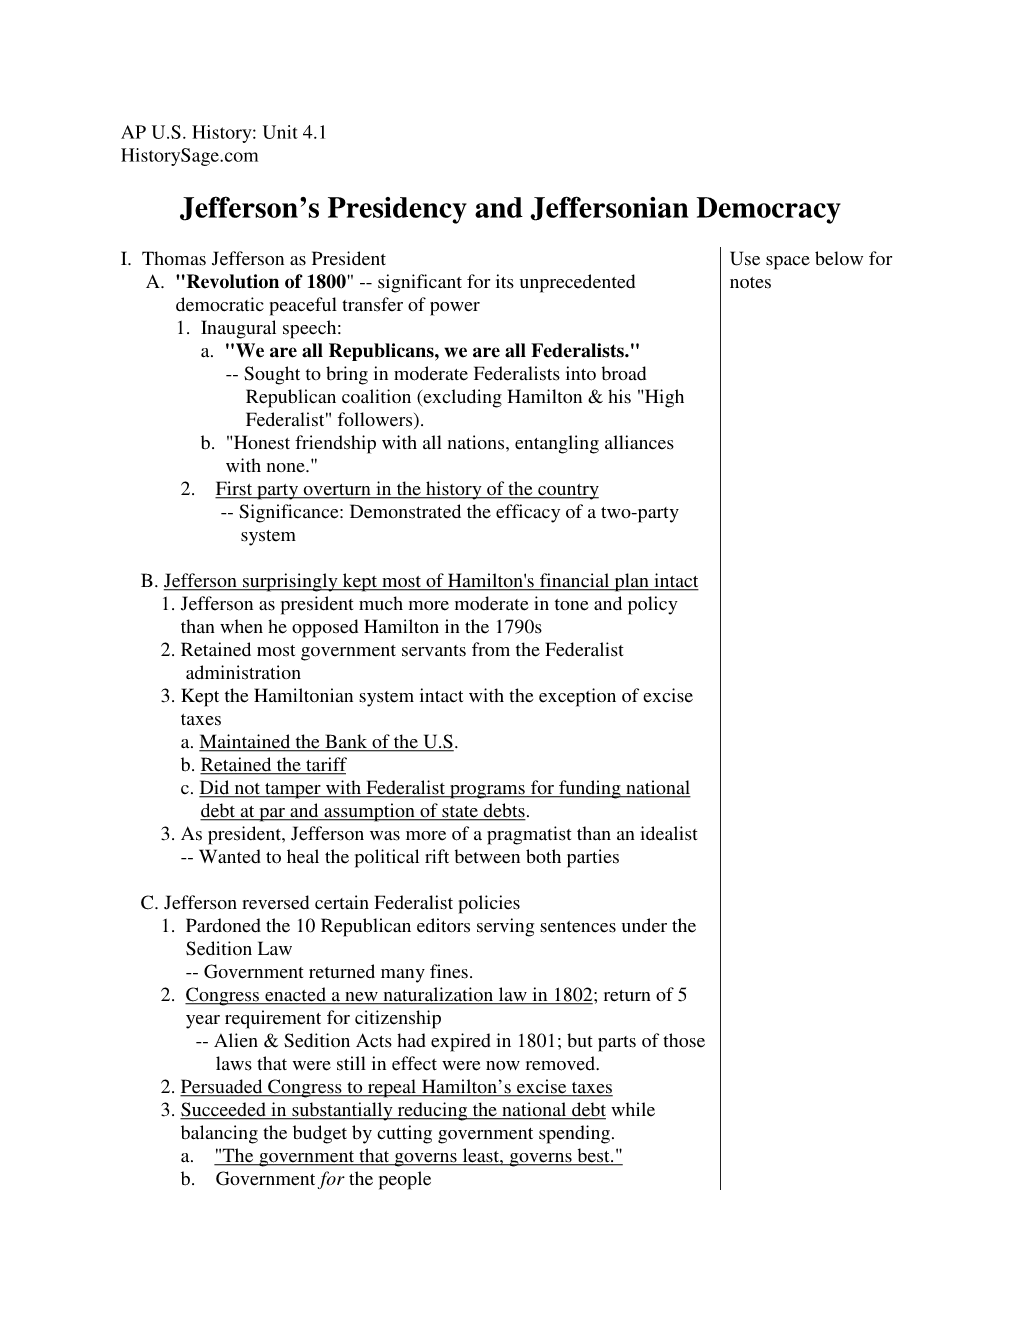 Jefferson's Presidency and Jeffersonian Democracy